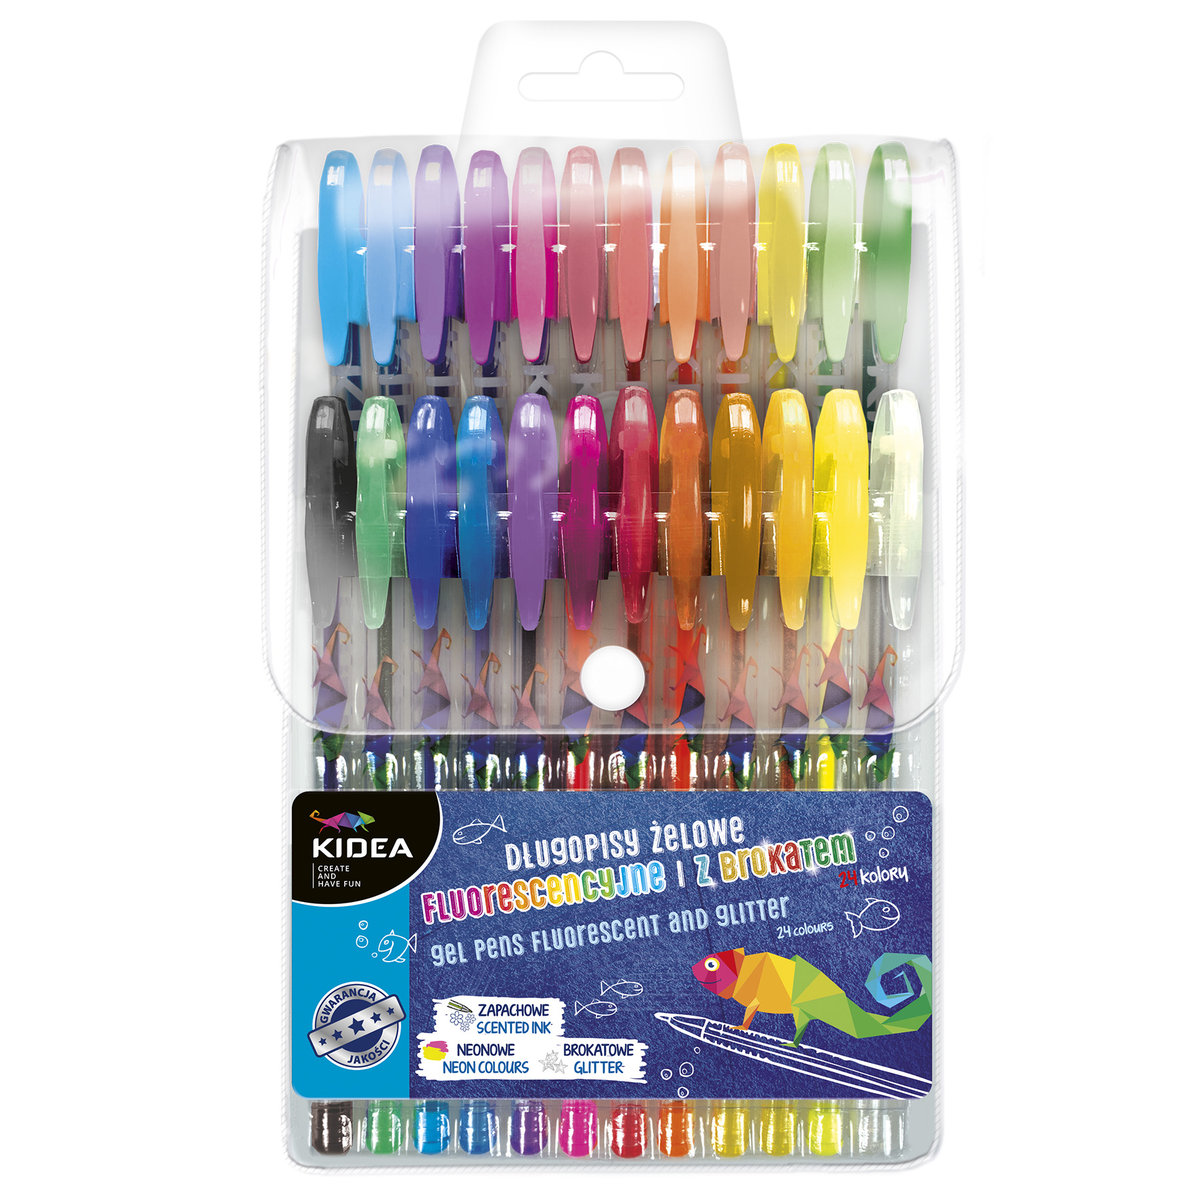 Фото - Ручка Kidea, Długopisy żelowe fluorescencyjne i z brokatem, 24 kolory